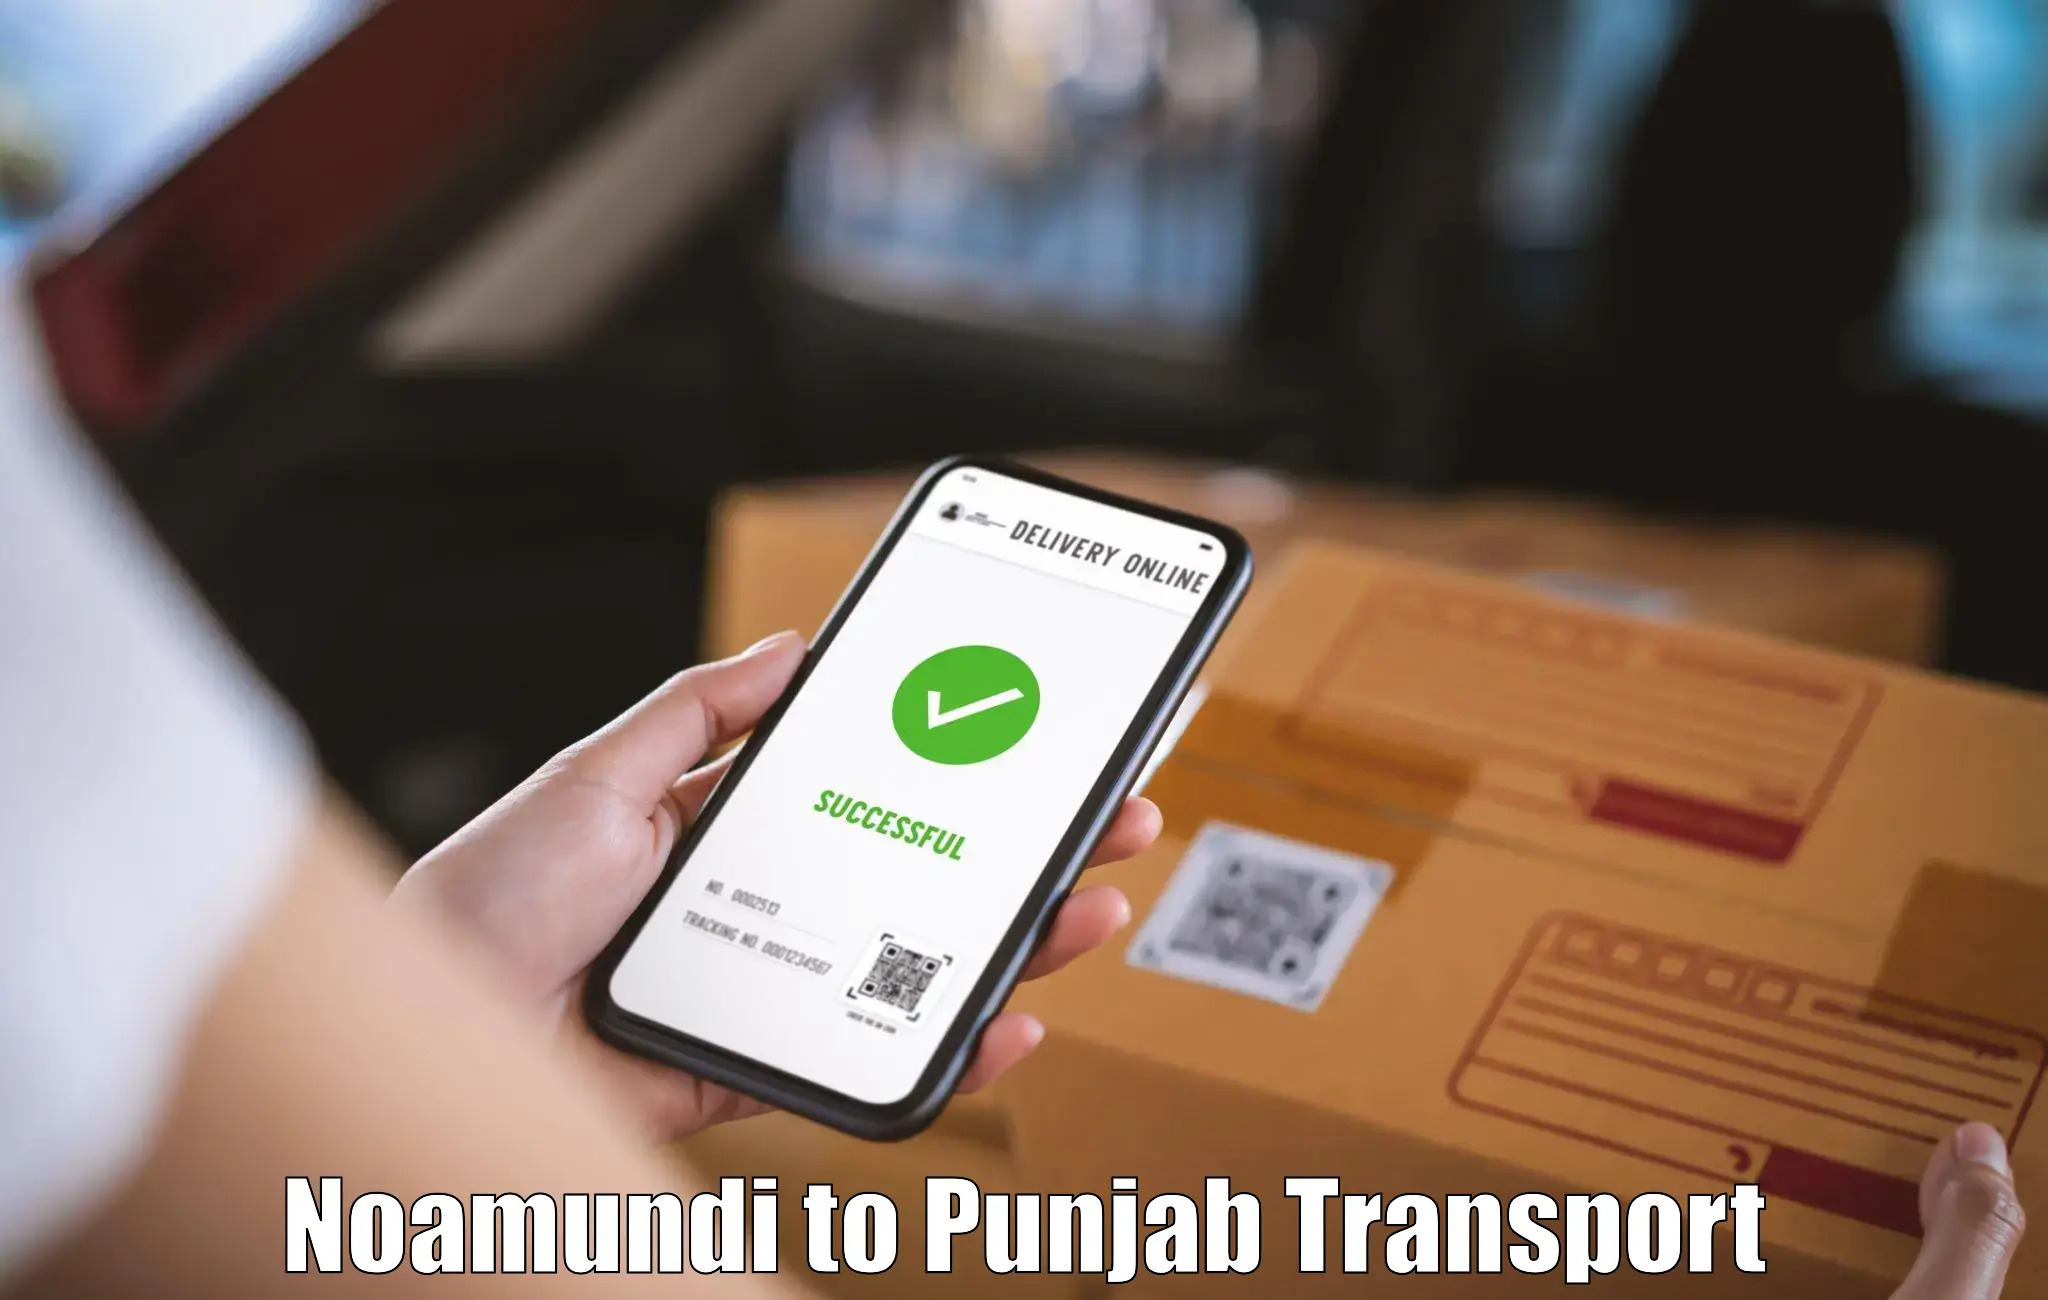 Nearest transport service Noamundi to Amritsar